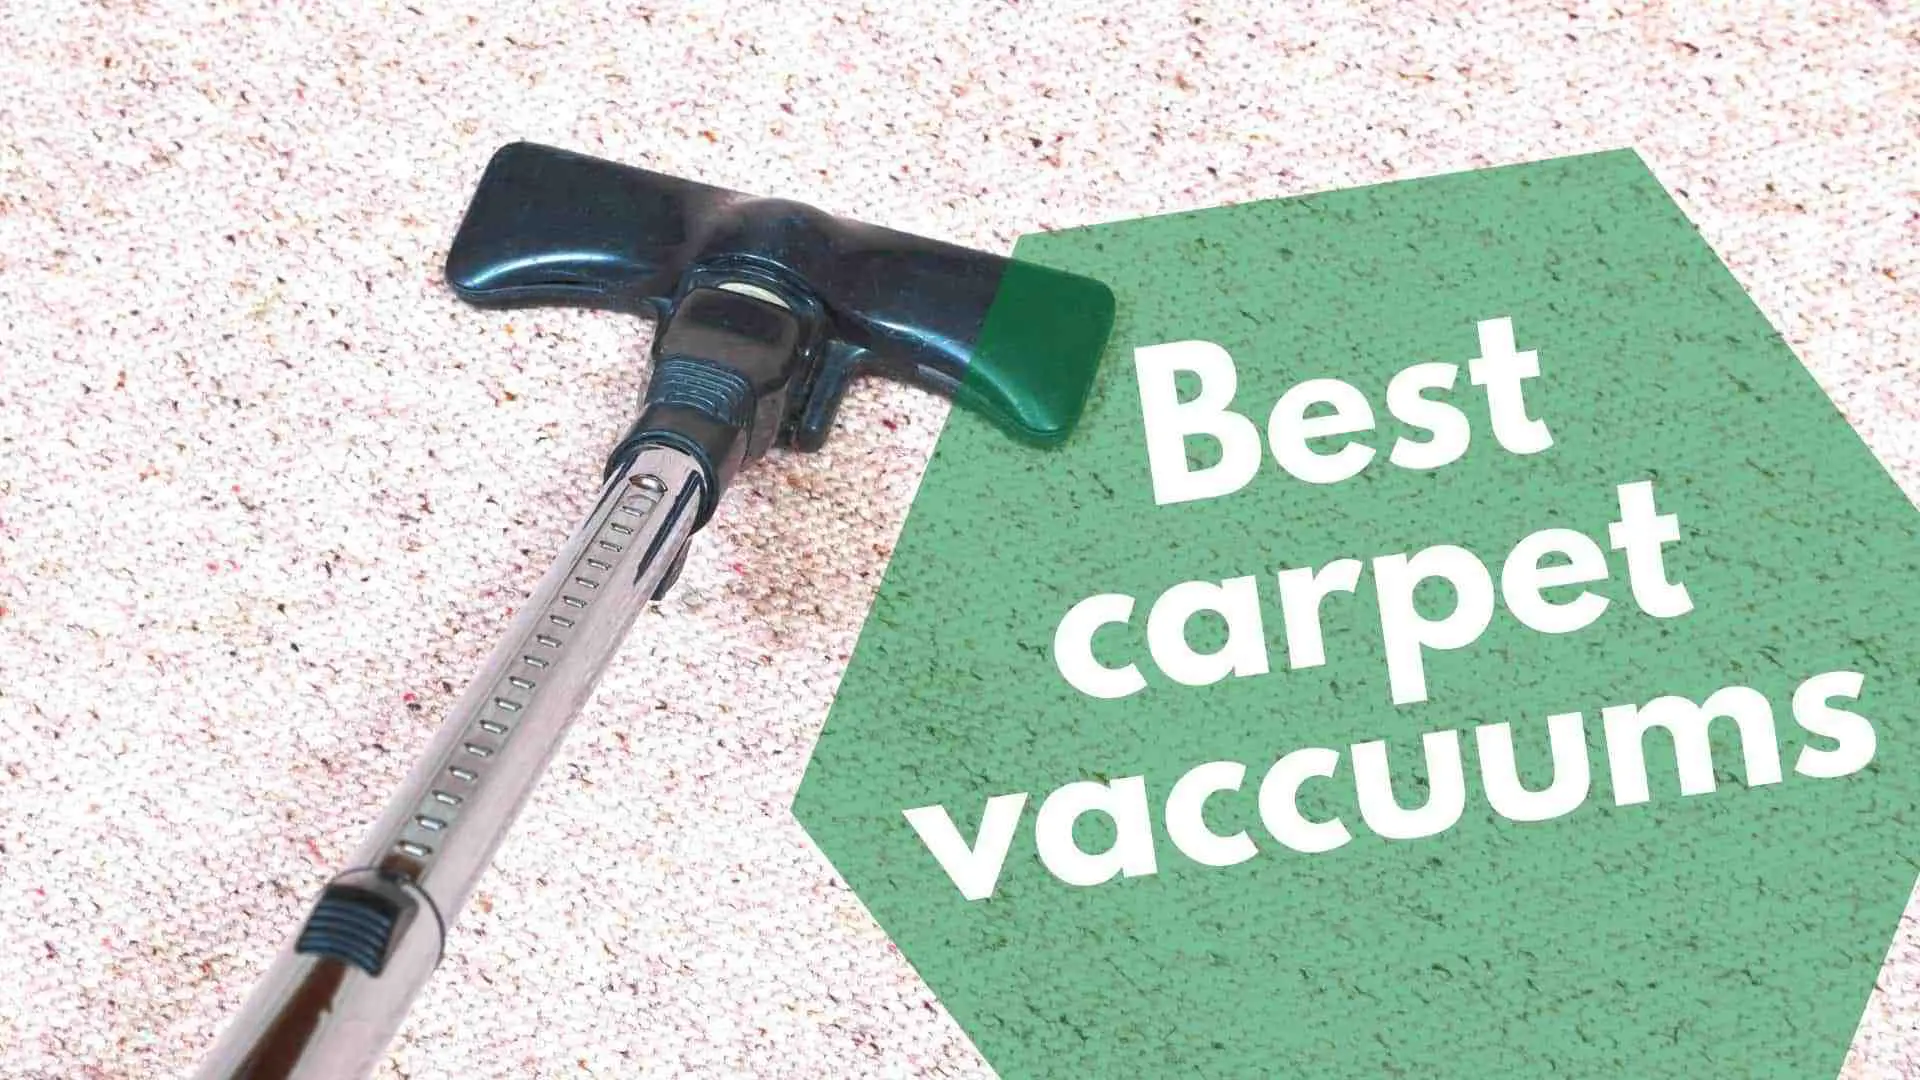 Best-carpet-vaccuums